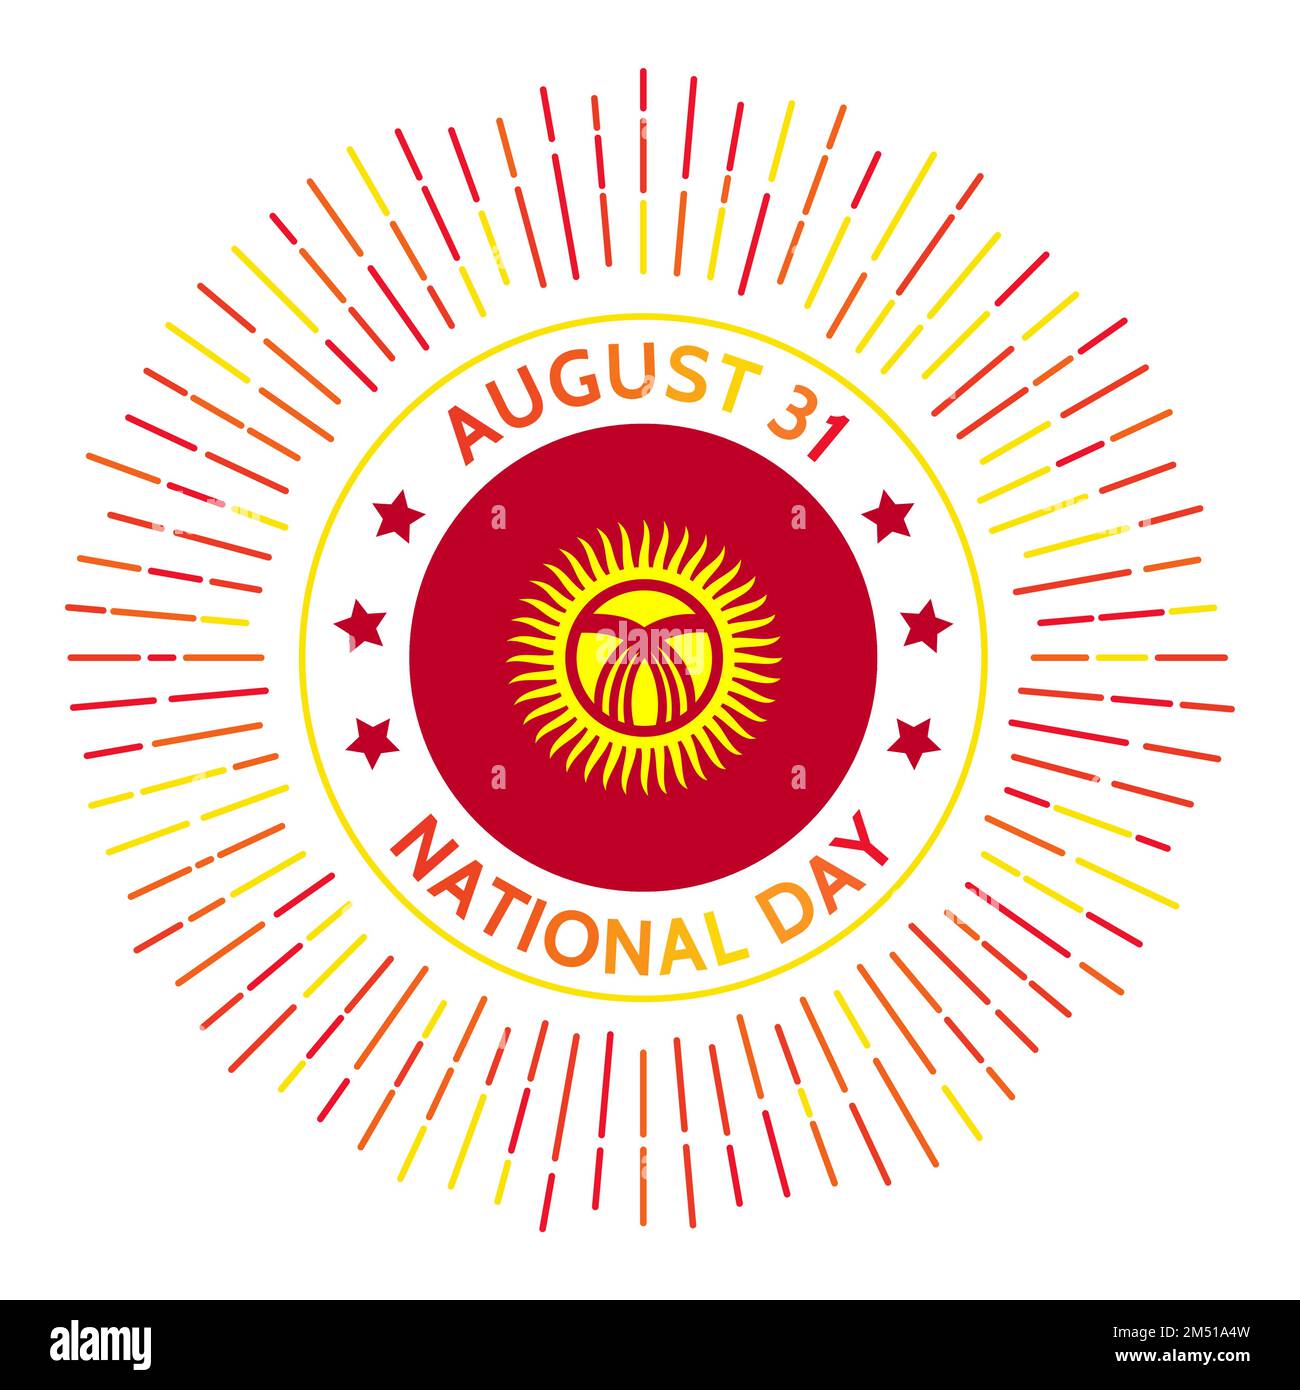 Kirgisistan Nationalfeiertag. Unabhängigkeit von der UdSSR im Jahr 1991. Gefeiert am 31. August. Stock Vektor